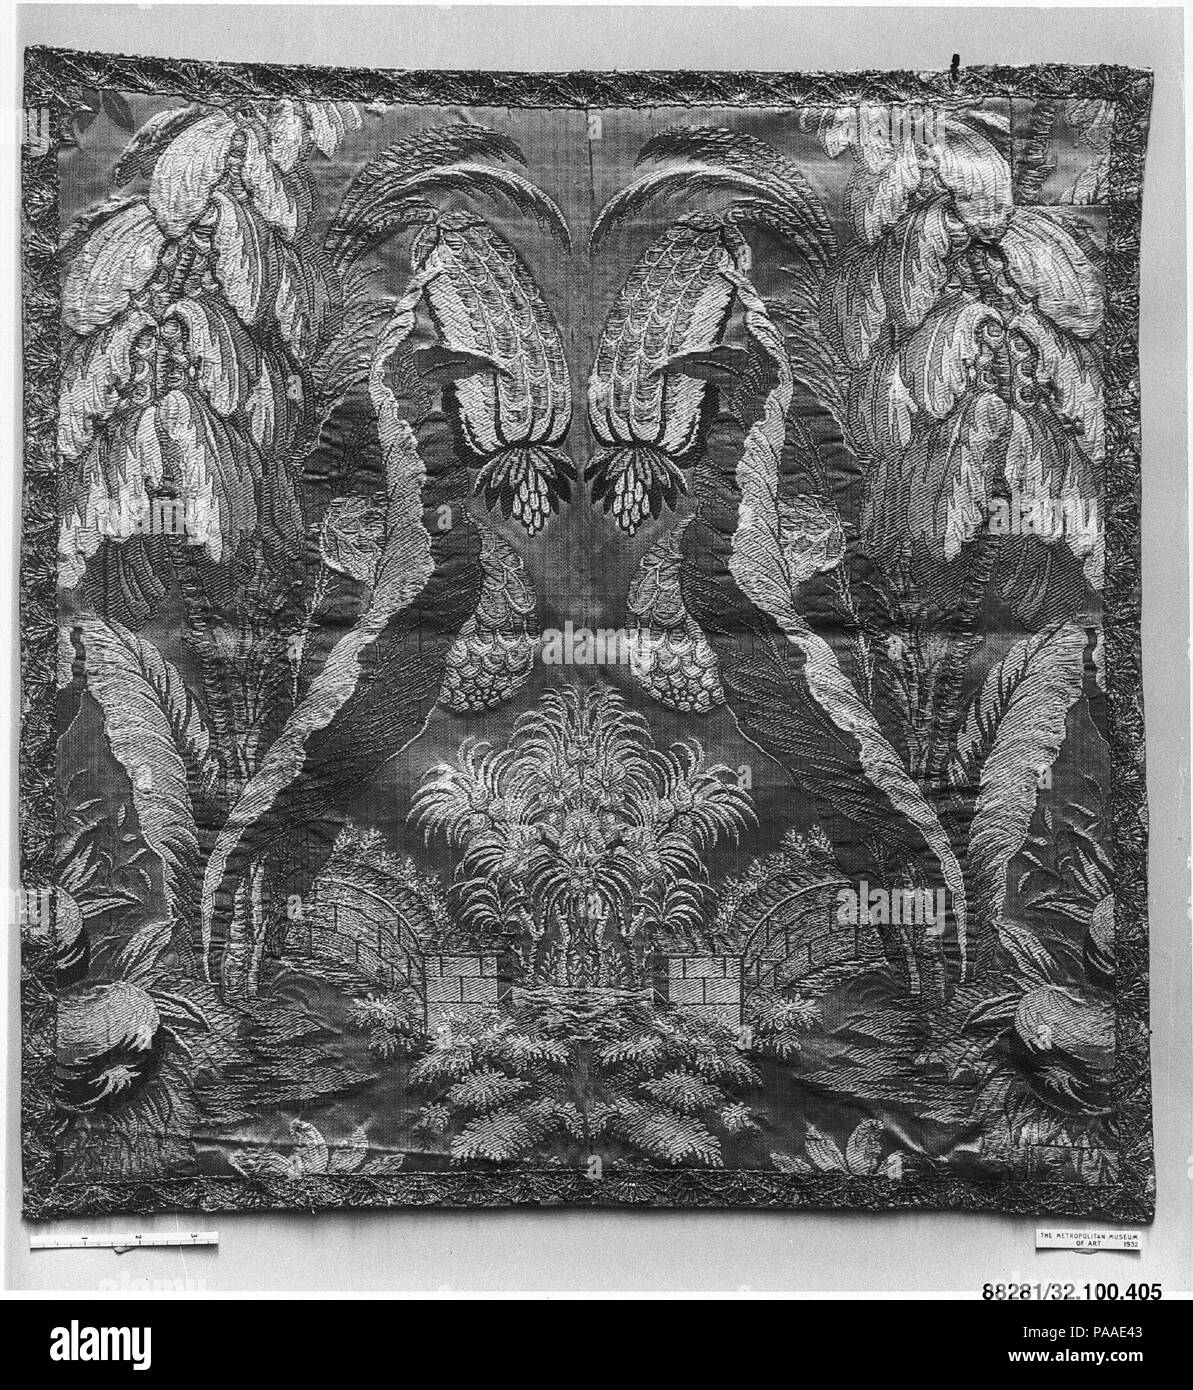 Calice velo. Cultura: Italiano. Dimensioni: L. 21 x W. 20 3/8 pollici (53,3 x 51,8 cm). Data: 1700-1725. Museo: Metropolitan Museum of Art di New York, Stati Uniti d'America. Foto Stock